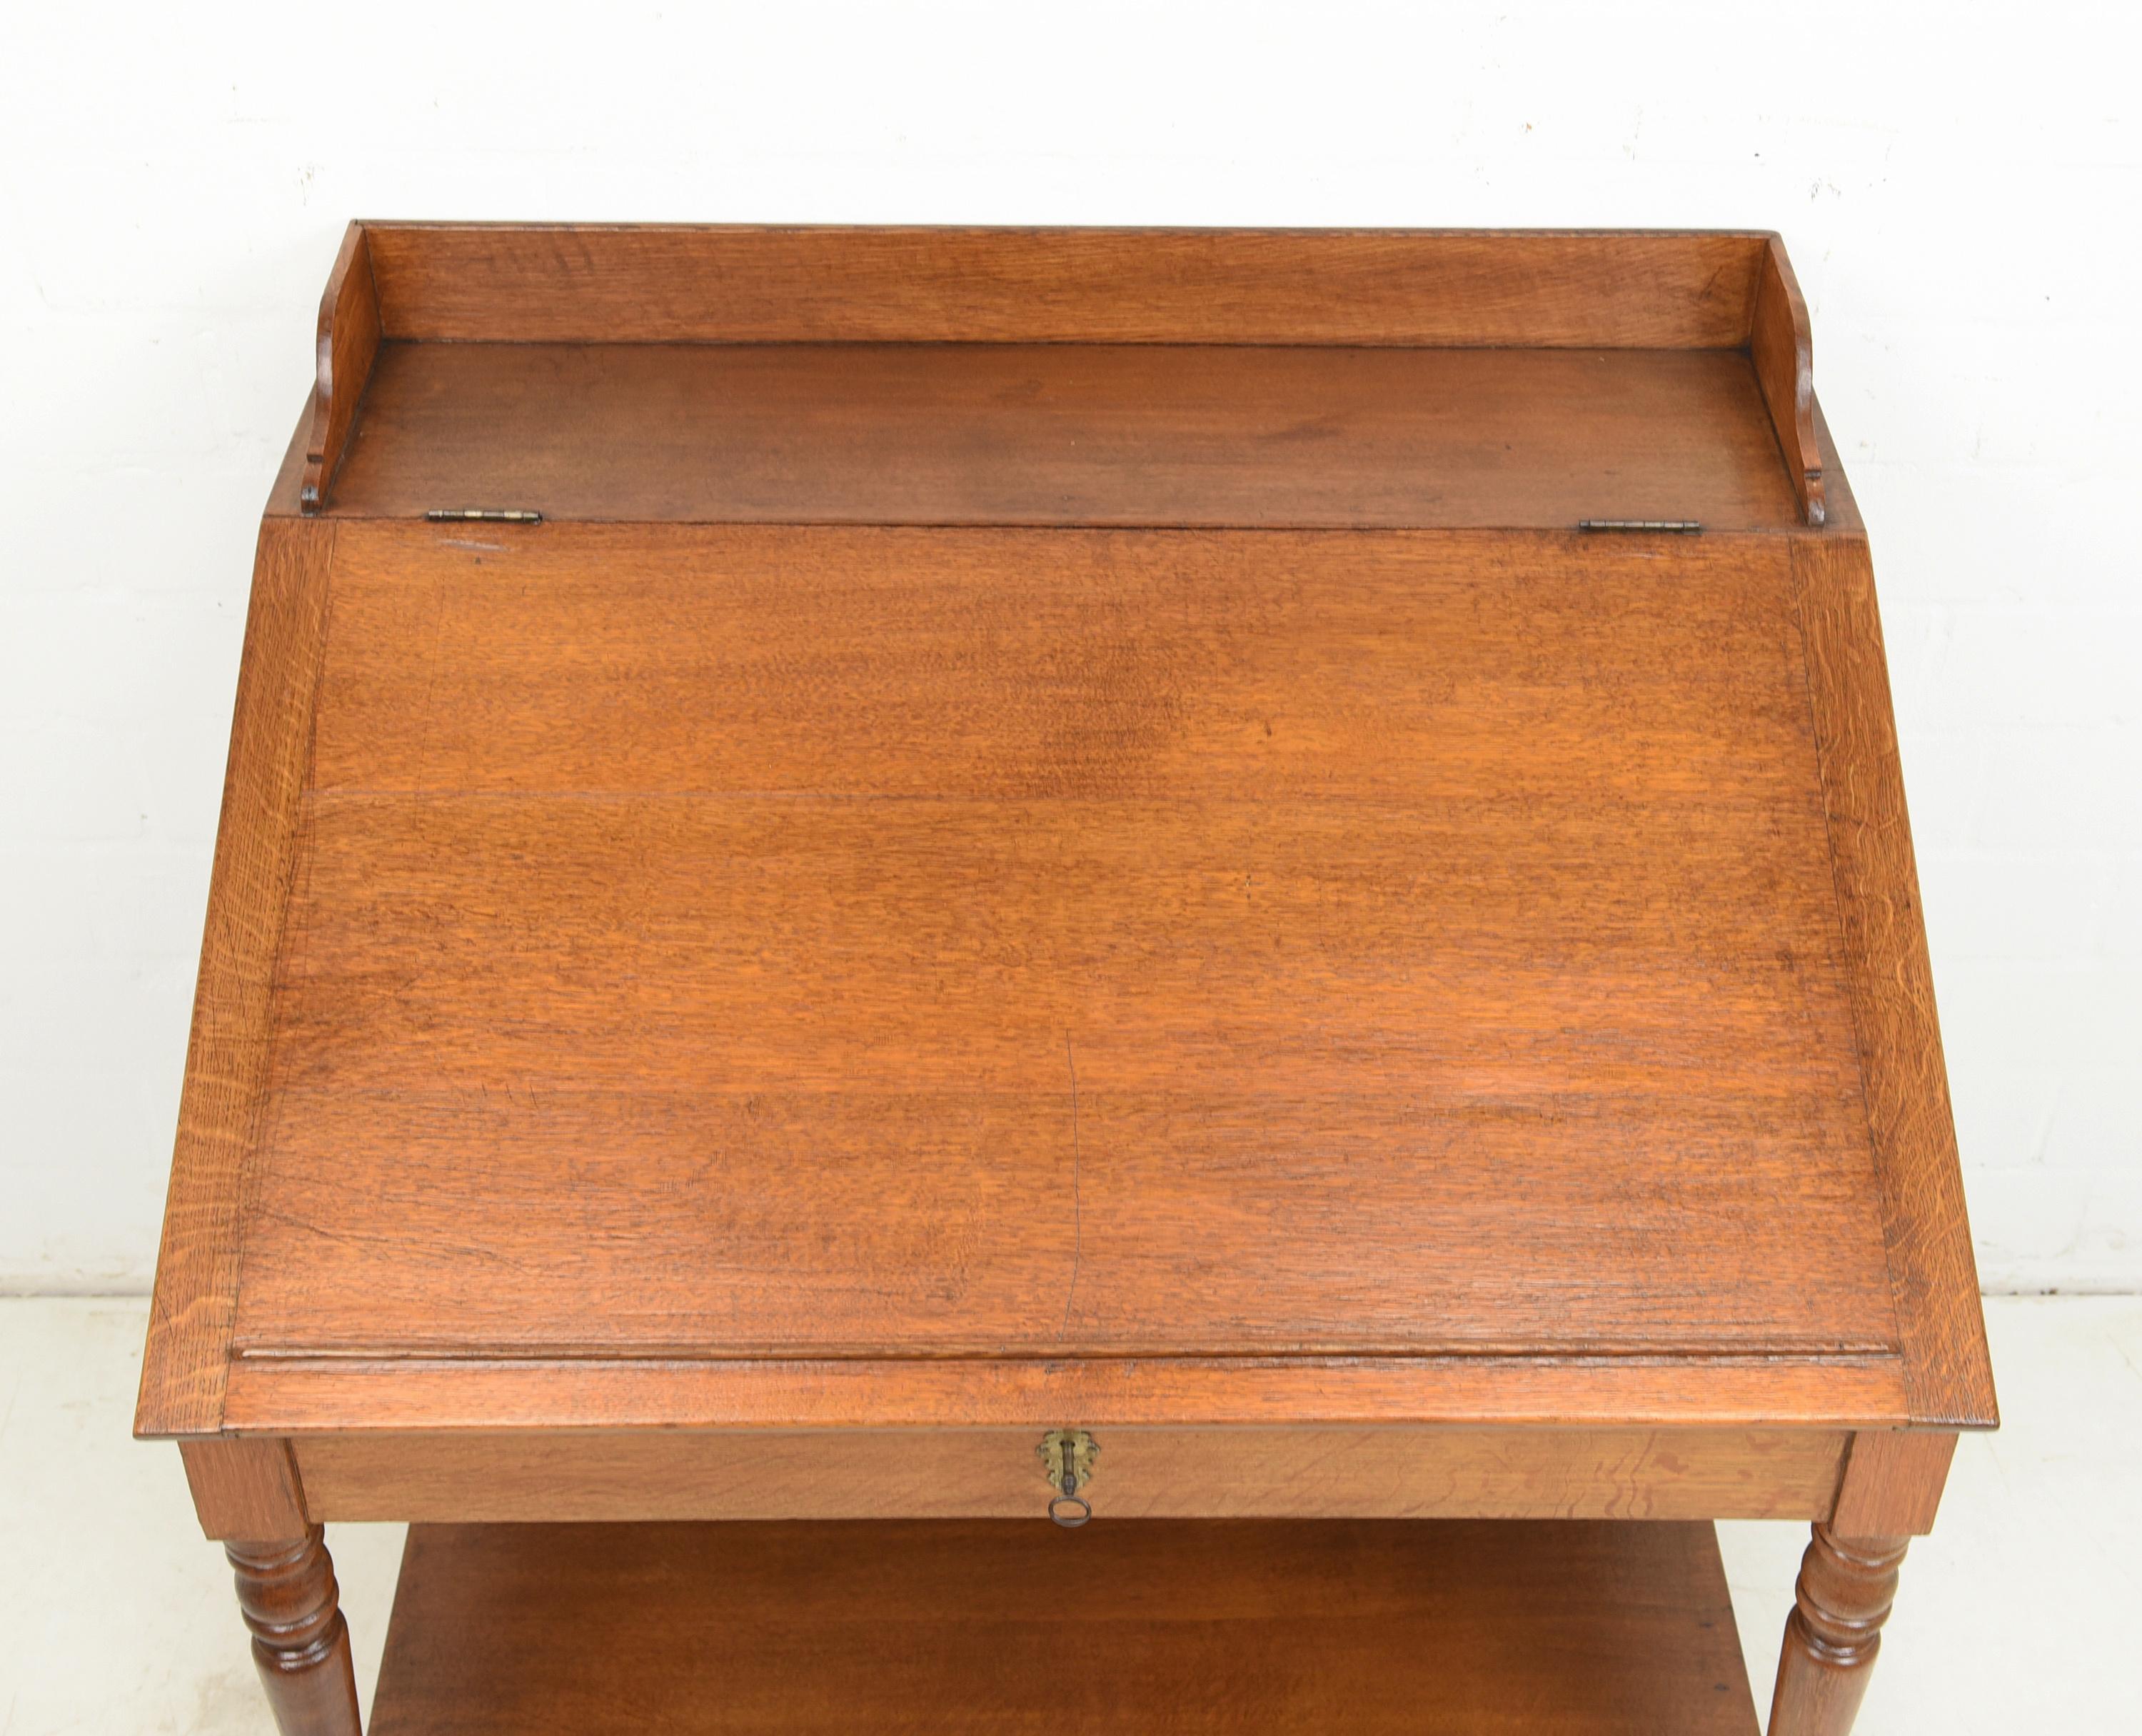 Gründerzeit Writing Desk / Seat Desk in Solid Oak, 1880 For Sale 3